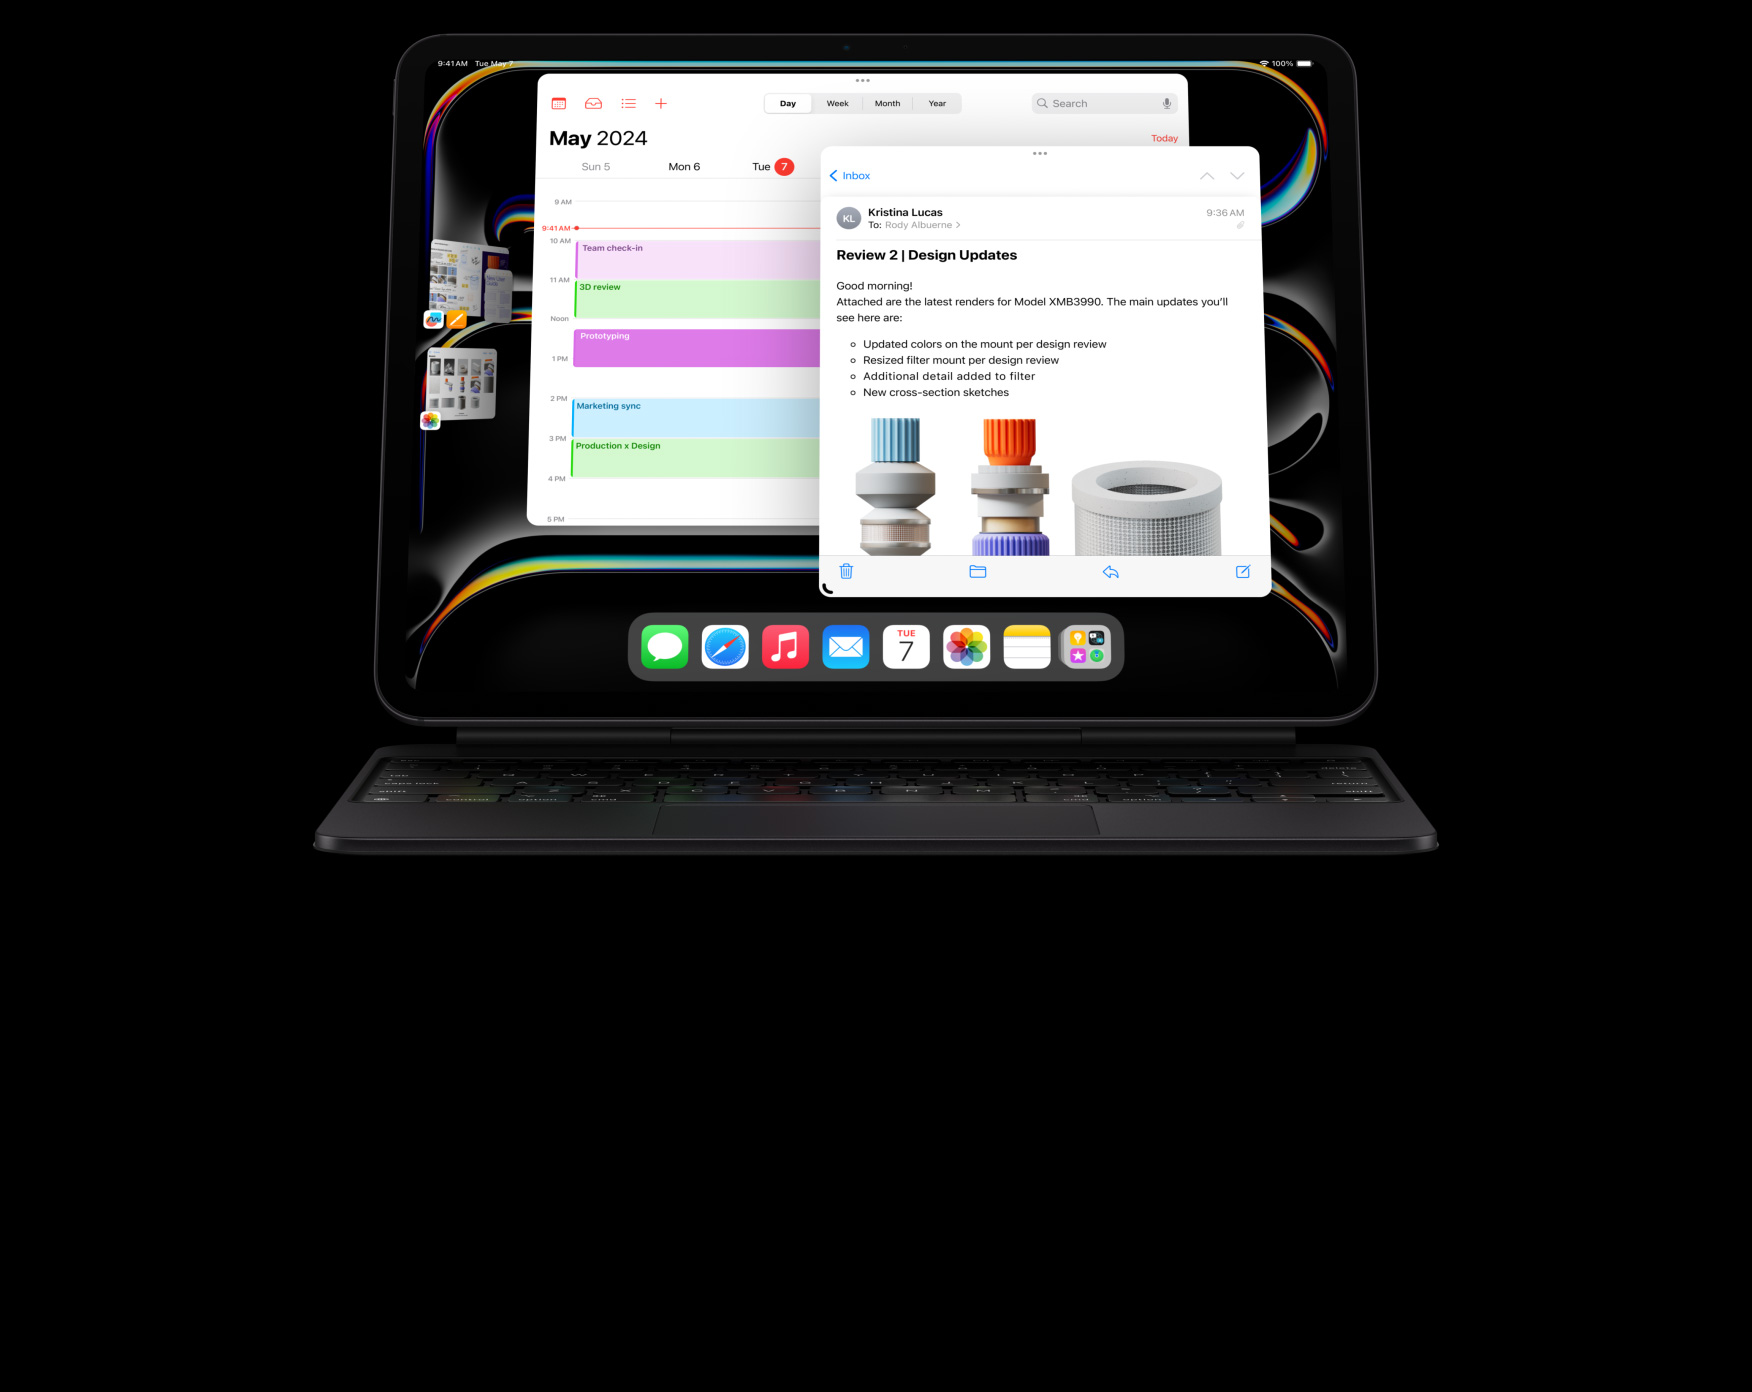 Vaakasuunnassa olevaan iPad Prohon on liitetty Magic Keyboard, käyttäjä tekee useita asioita yhtä aikaa useiden appien ollessa avoinna